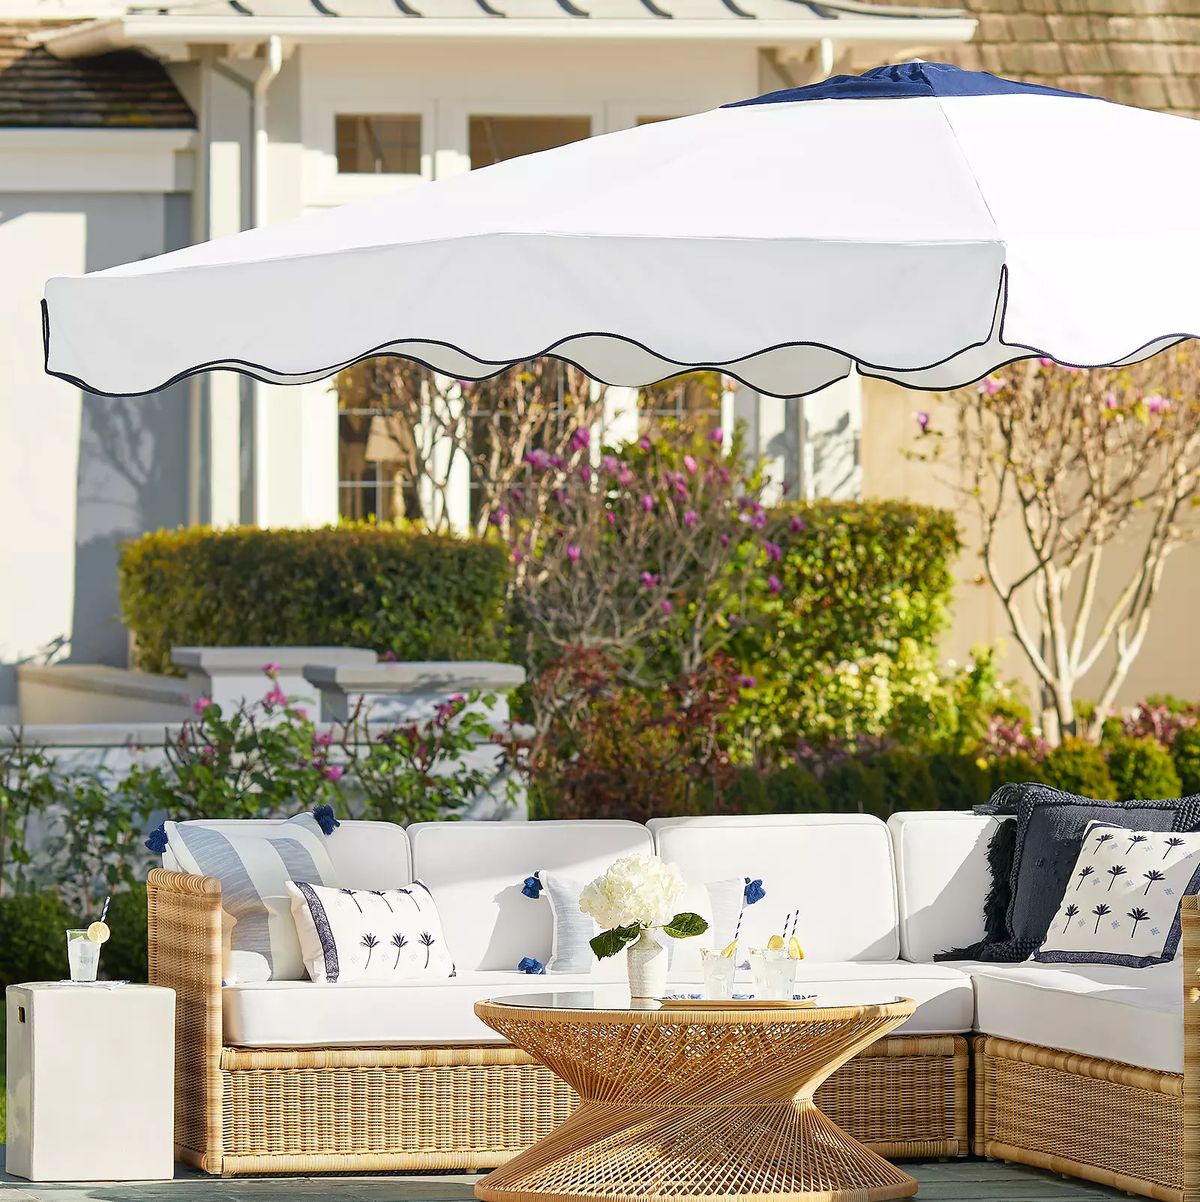 Premium Metal Garden & Outdoor Furniture Sets - Buy Online